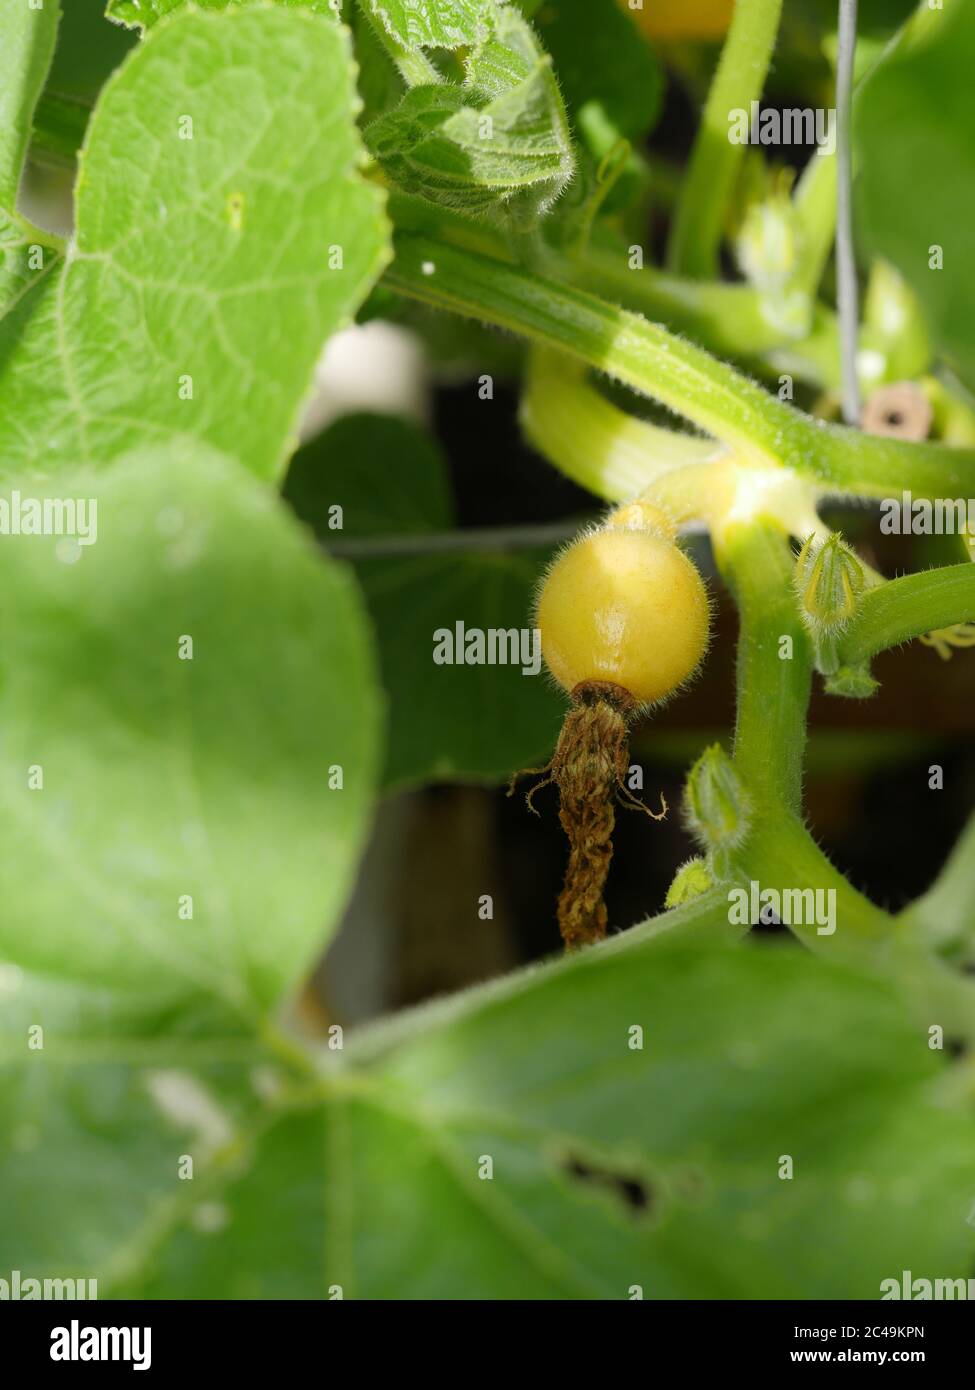 Squash uchiki kuri  female flower fertilized Stock Photo